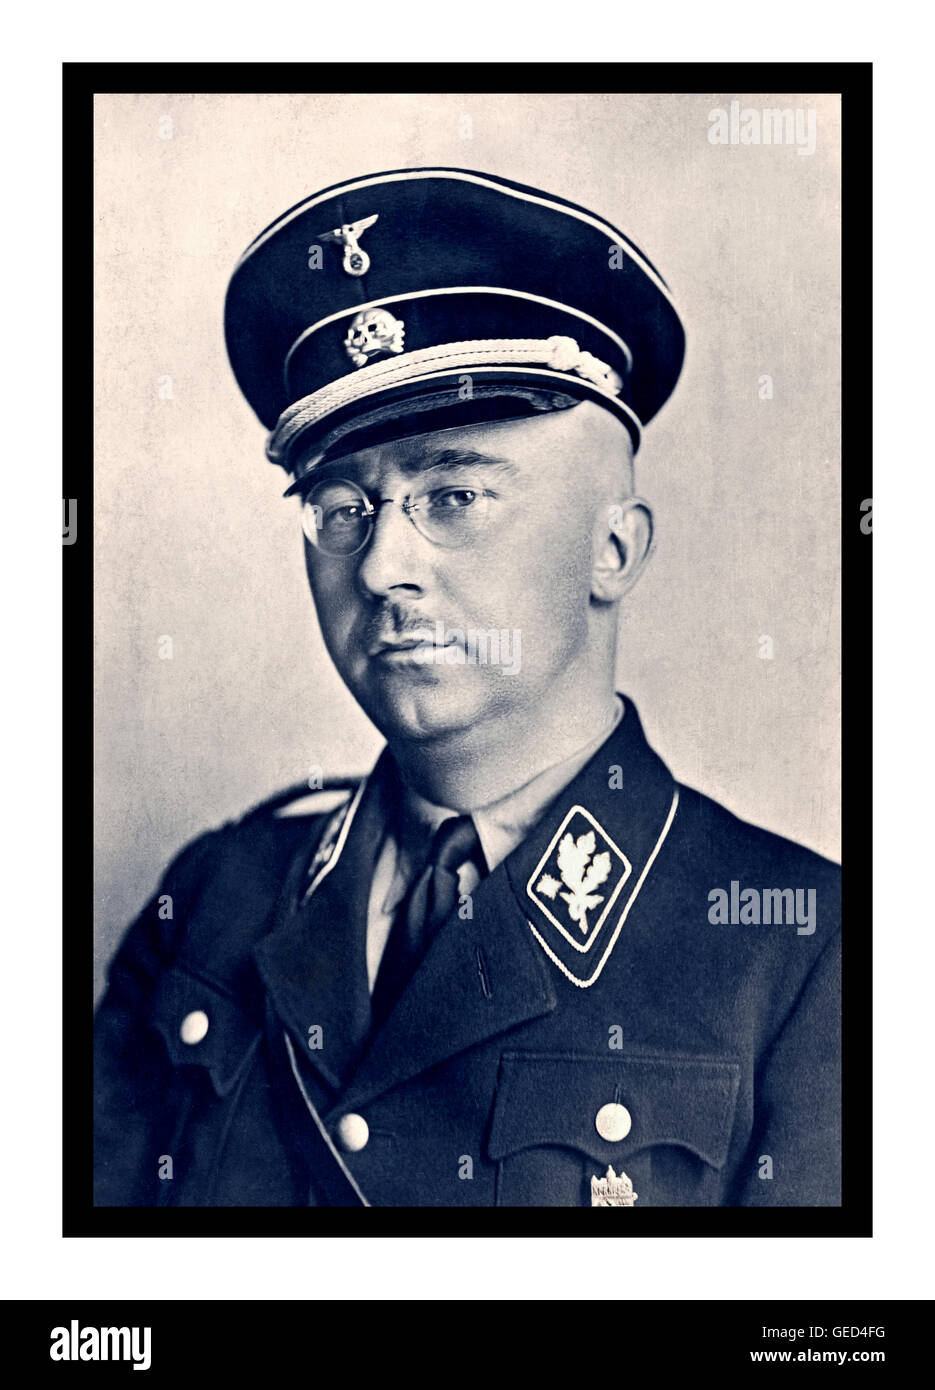 Heinrich Himmler formales Porträt in Waffen SS-Uniform. Deutscher Nationalsozialistischer Politiker. Nazi-Militärkommandeur Geheimpolizei & führender Nazi-Planer des Holocaust. Stockfoto